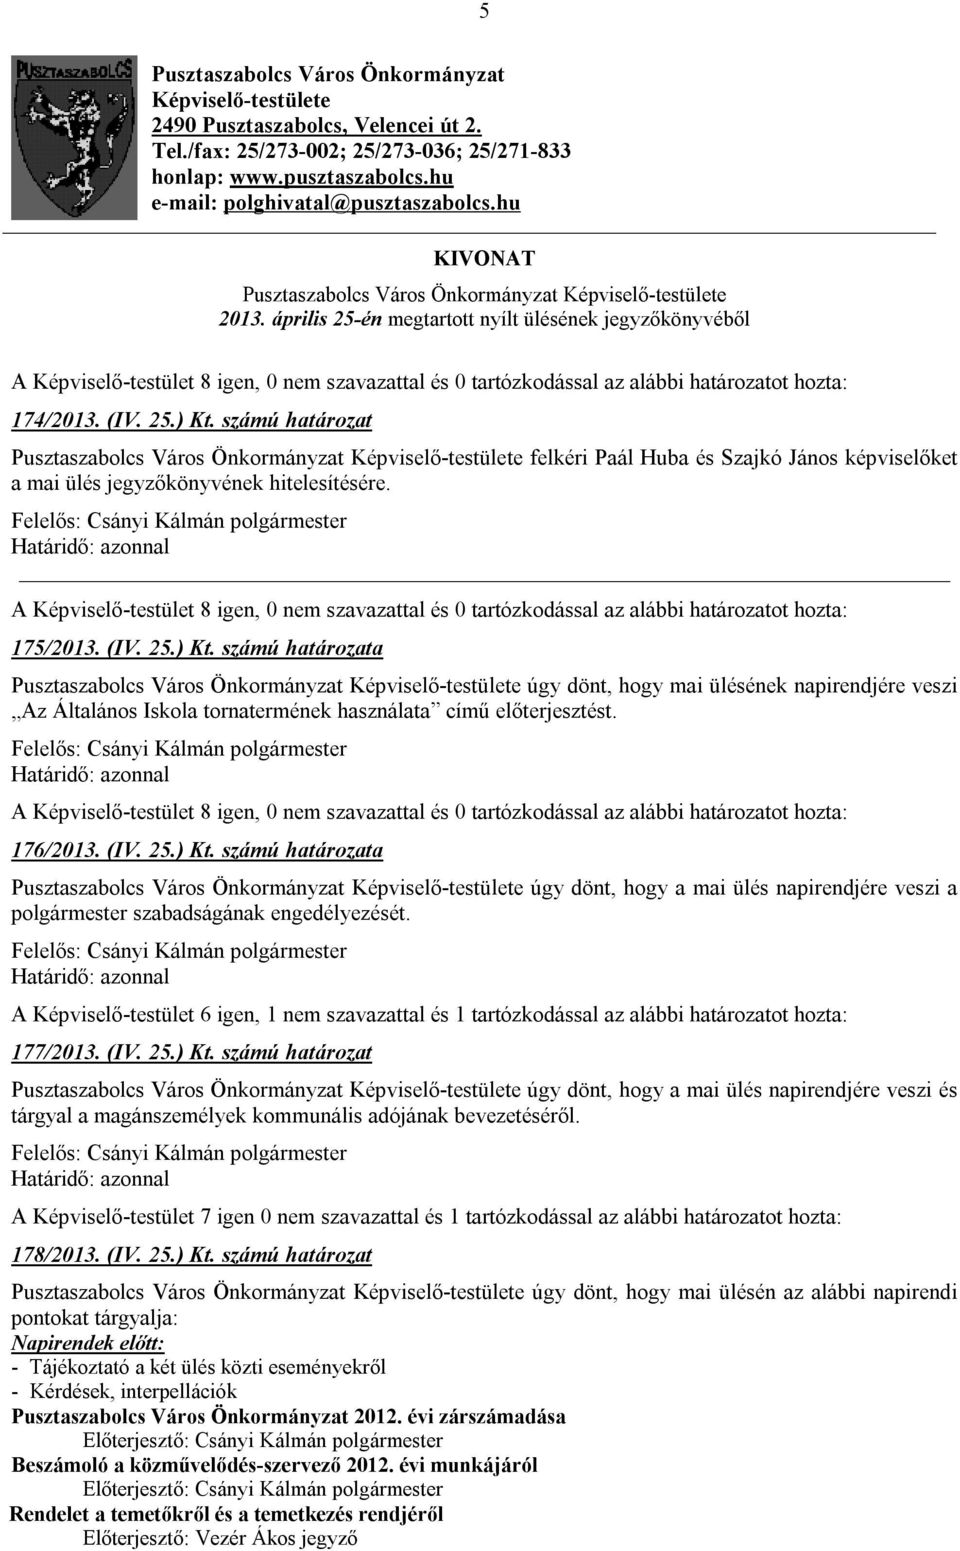 számú határozat Pusztaszabolcs Város Önkormányzat Képviselő-testülete felkéri Paál Huba és Szajkó János képviselőket a mai ülés jegyzőkönyvének hitelesítésére. 175/2013. (IV. 25.) Kt.